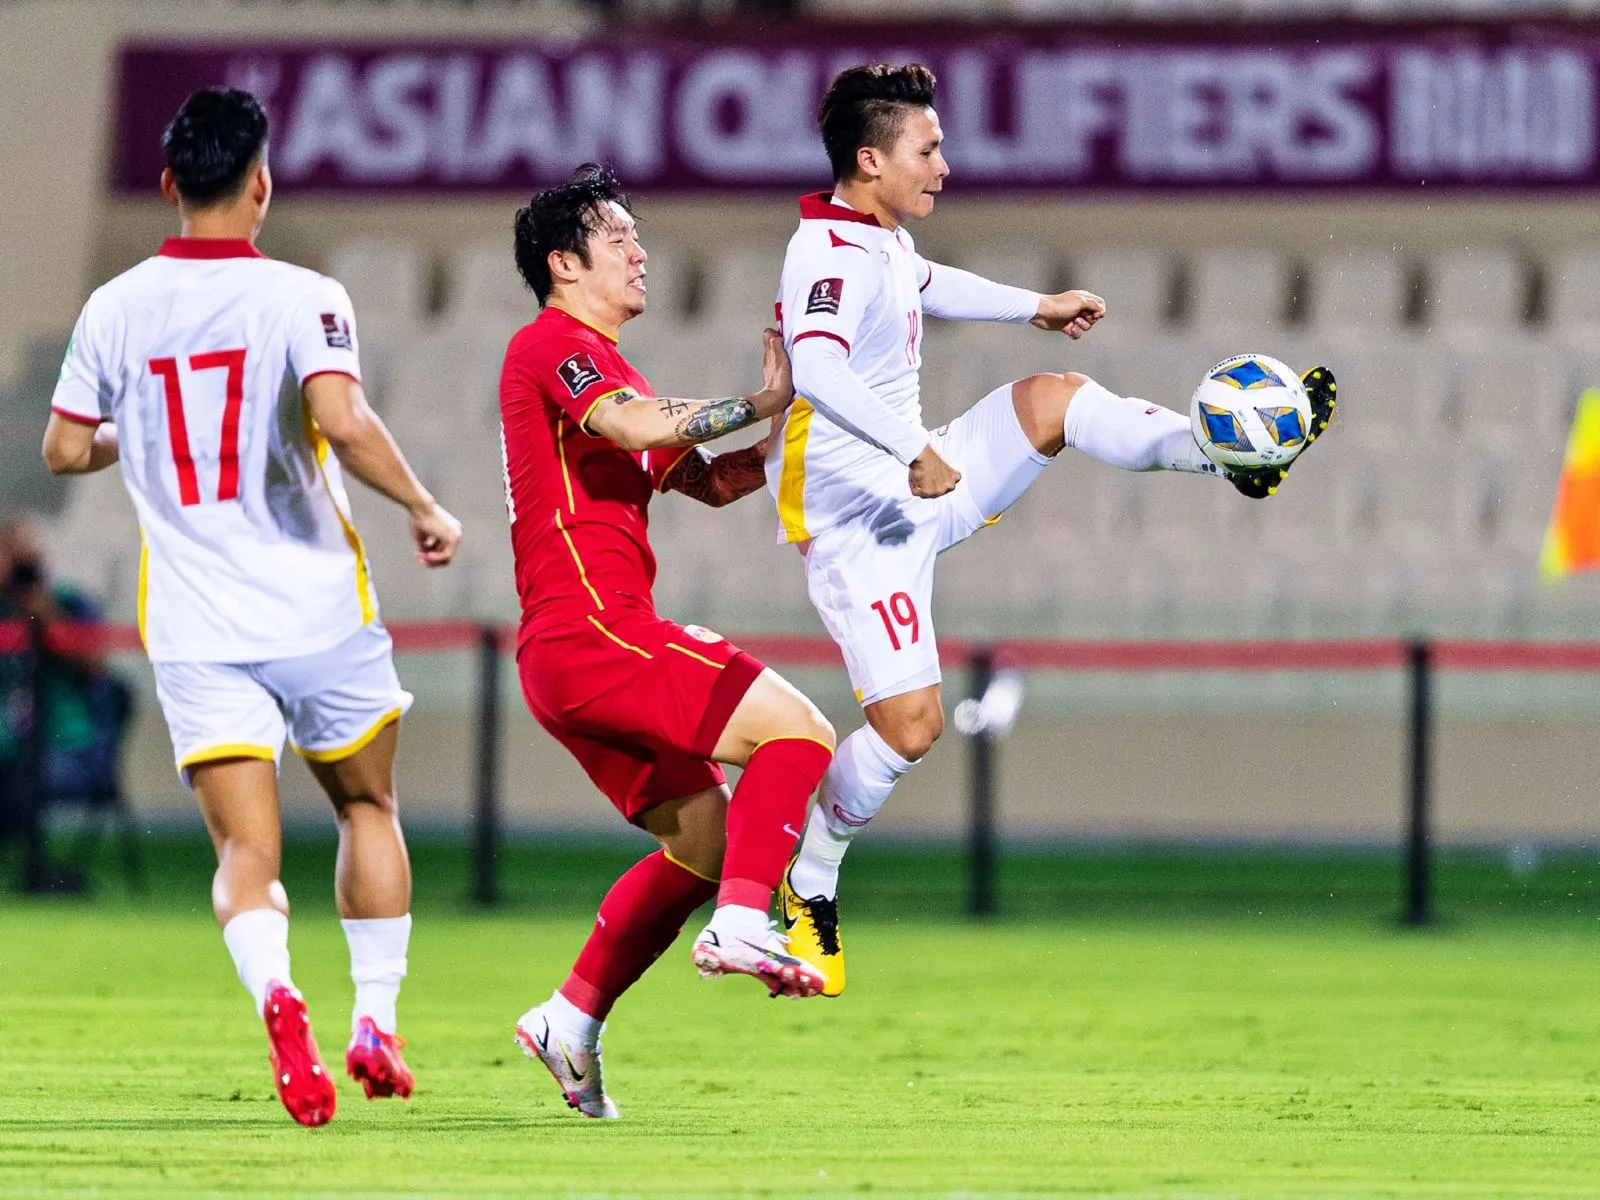 ĐT U23 Việt Nam dốc sức tập luyện tại UAE - ĐT Việt Nam đã có được những kinh nghiệm quý giá